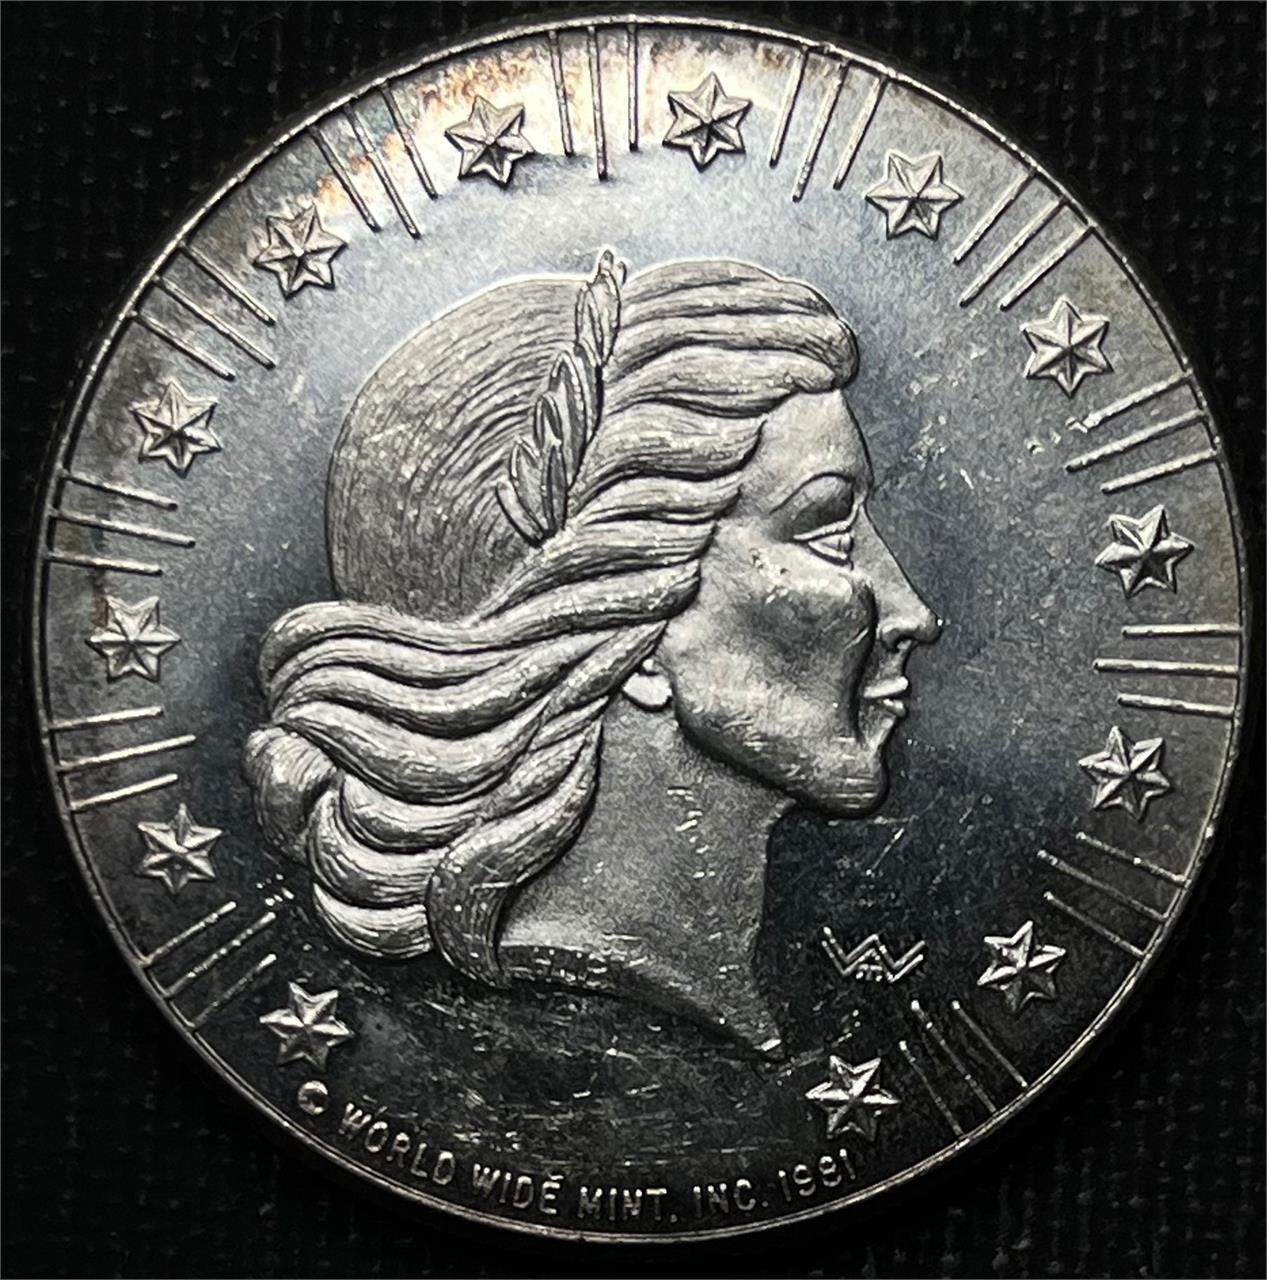 Vintage 1981 World Wide Mint Silver Round